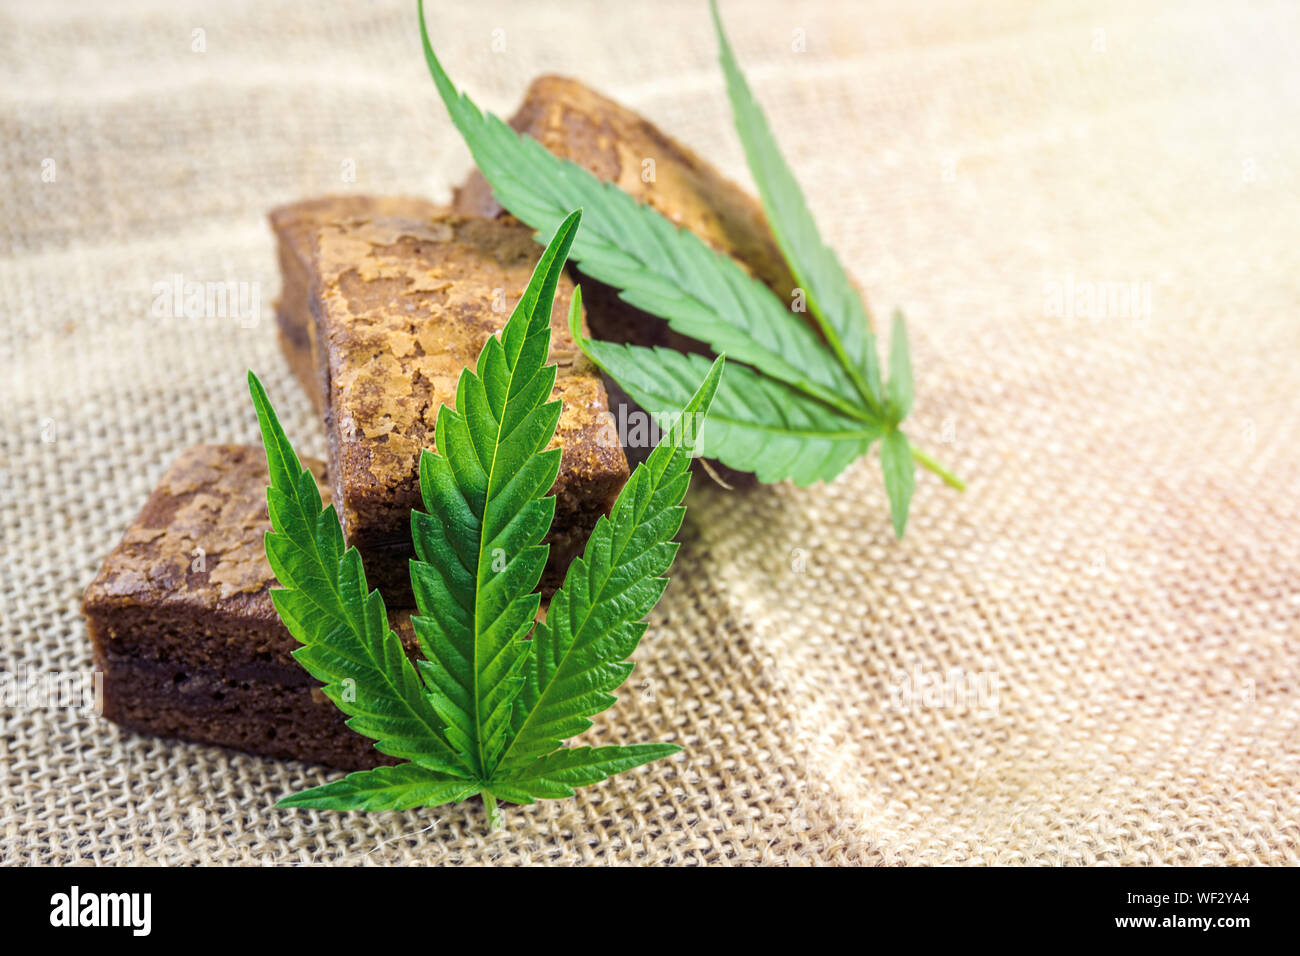 Cannabis Hash brownies with cannabis leaf on hemp cloth burlap Stock Photo